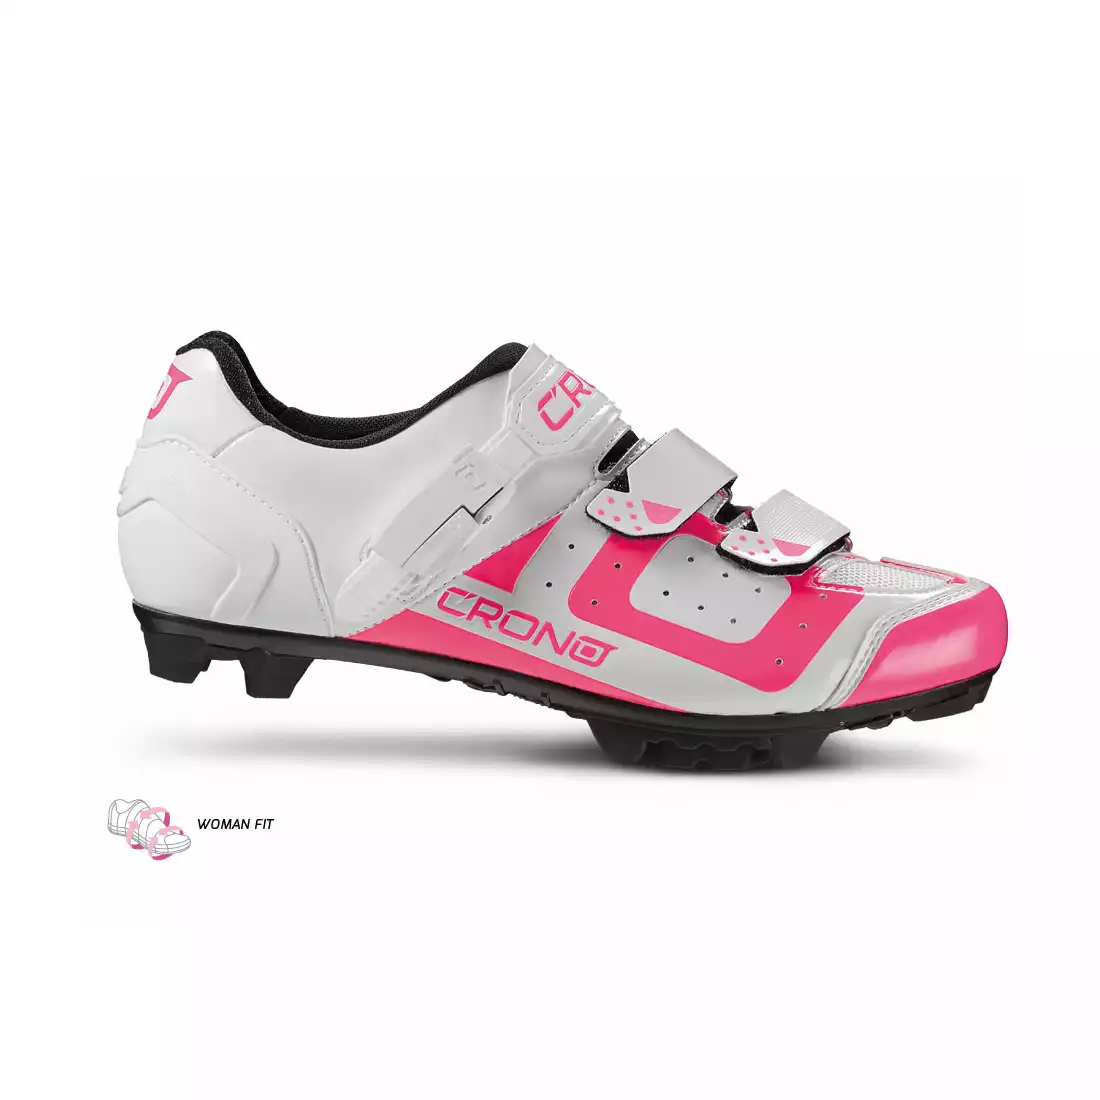 CRONO CX3 nylon damskie buty rowerowe MTB biało-różowe